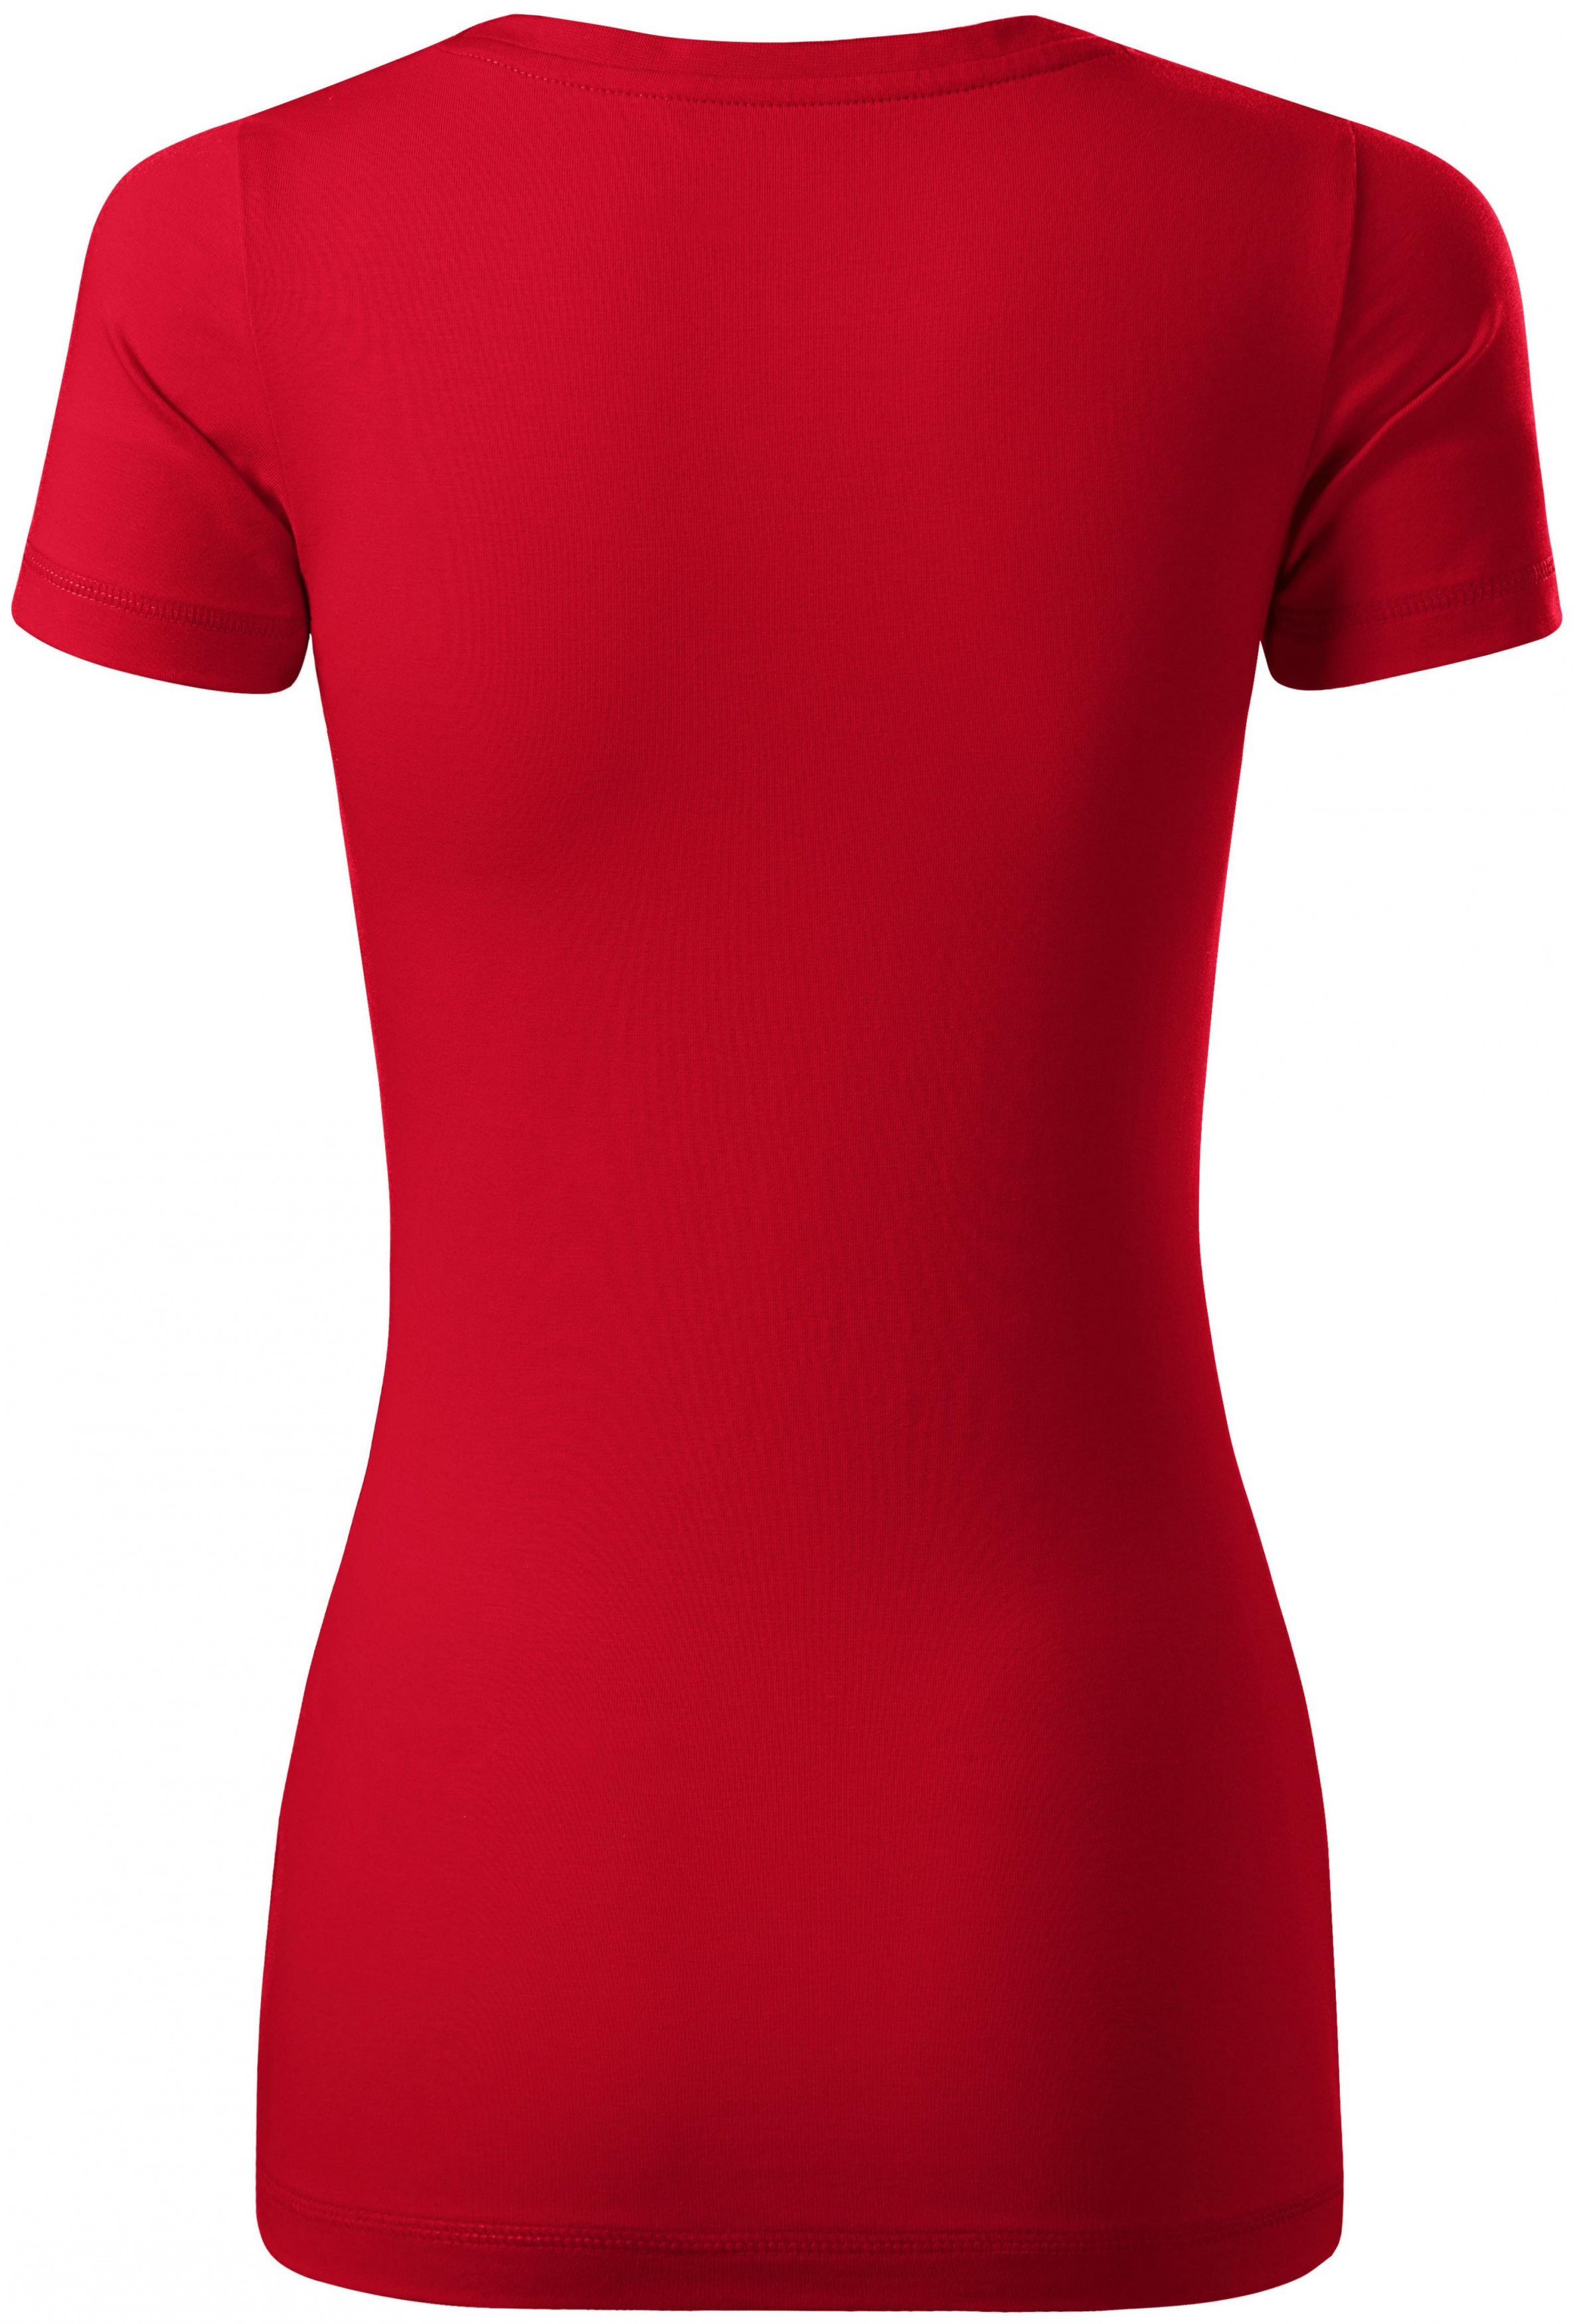 Dámske tričko s ozdobným prešitím, formula červená, L